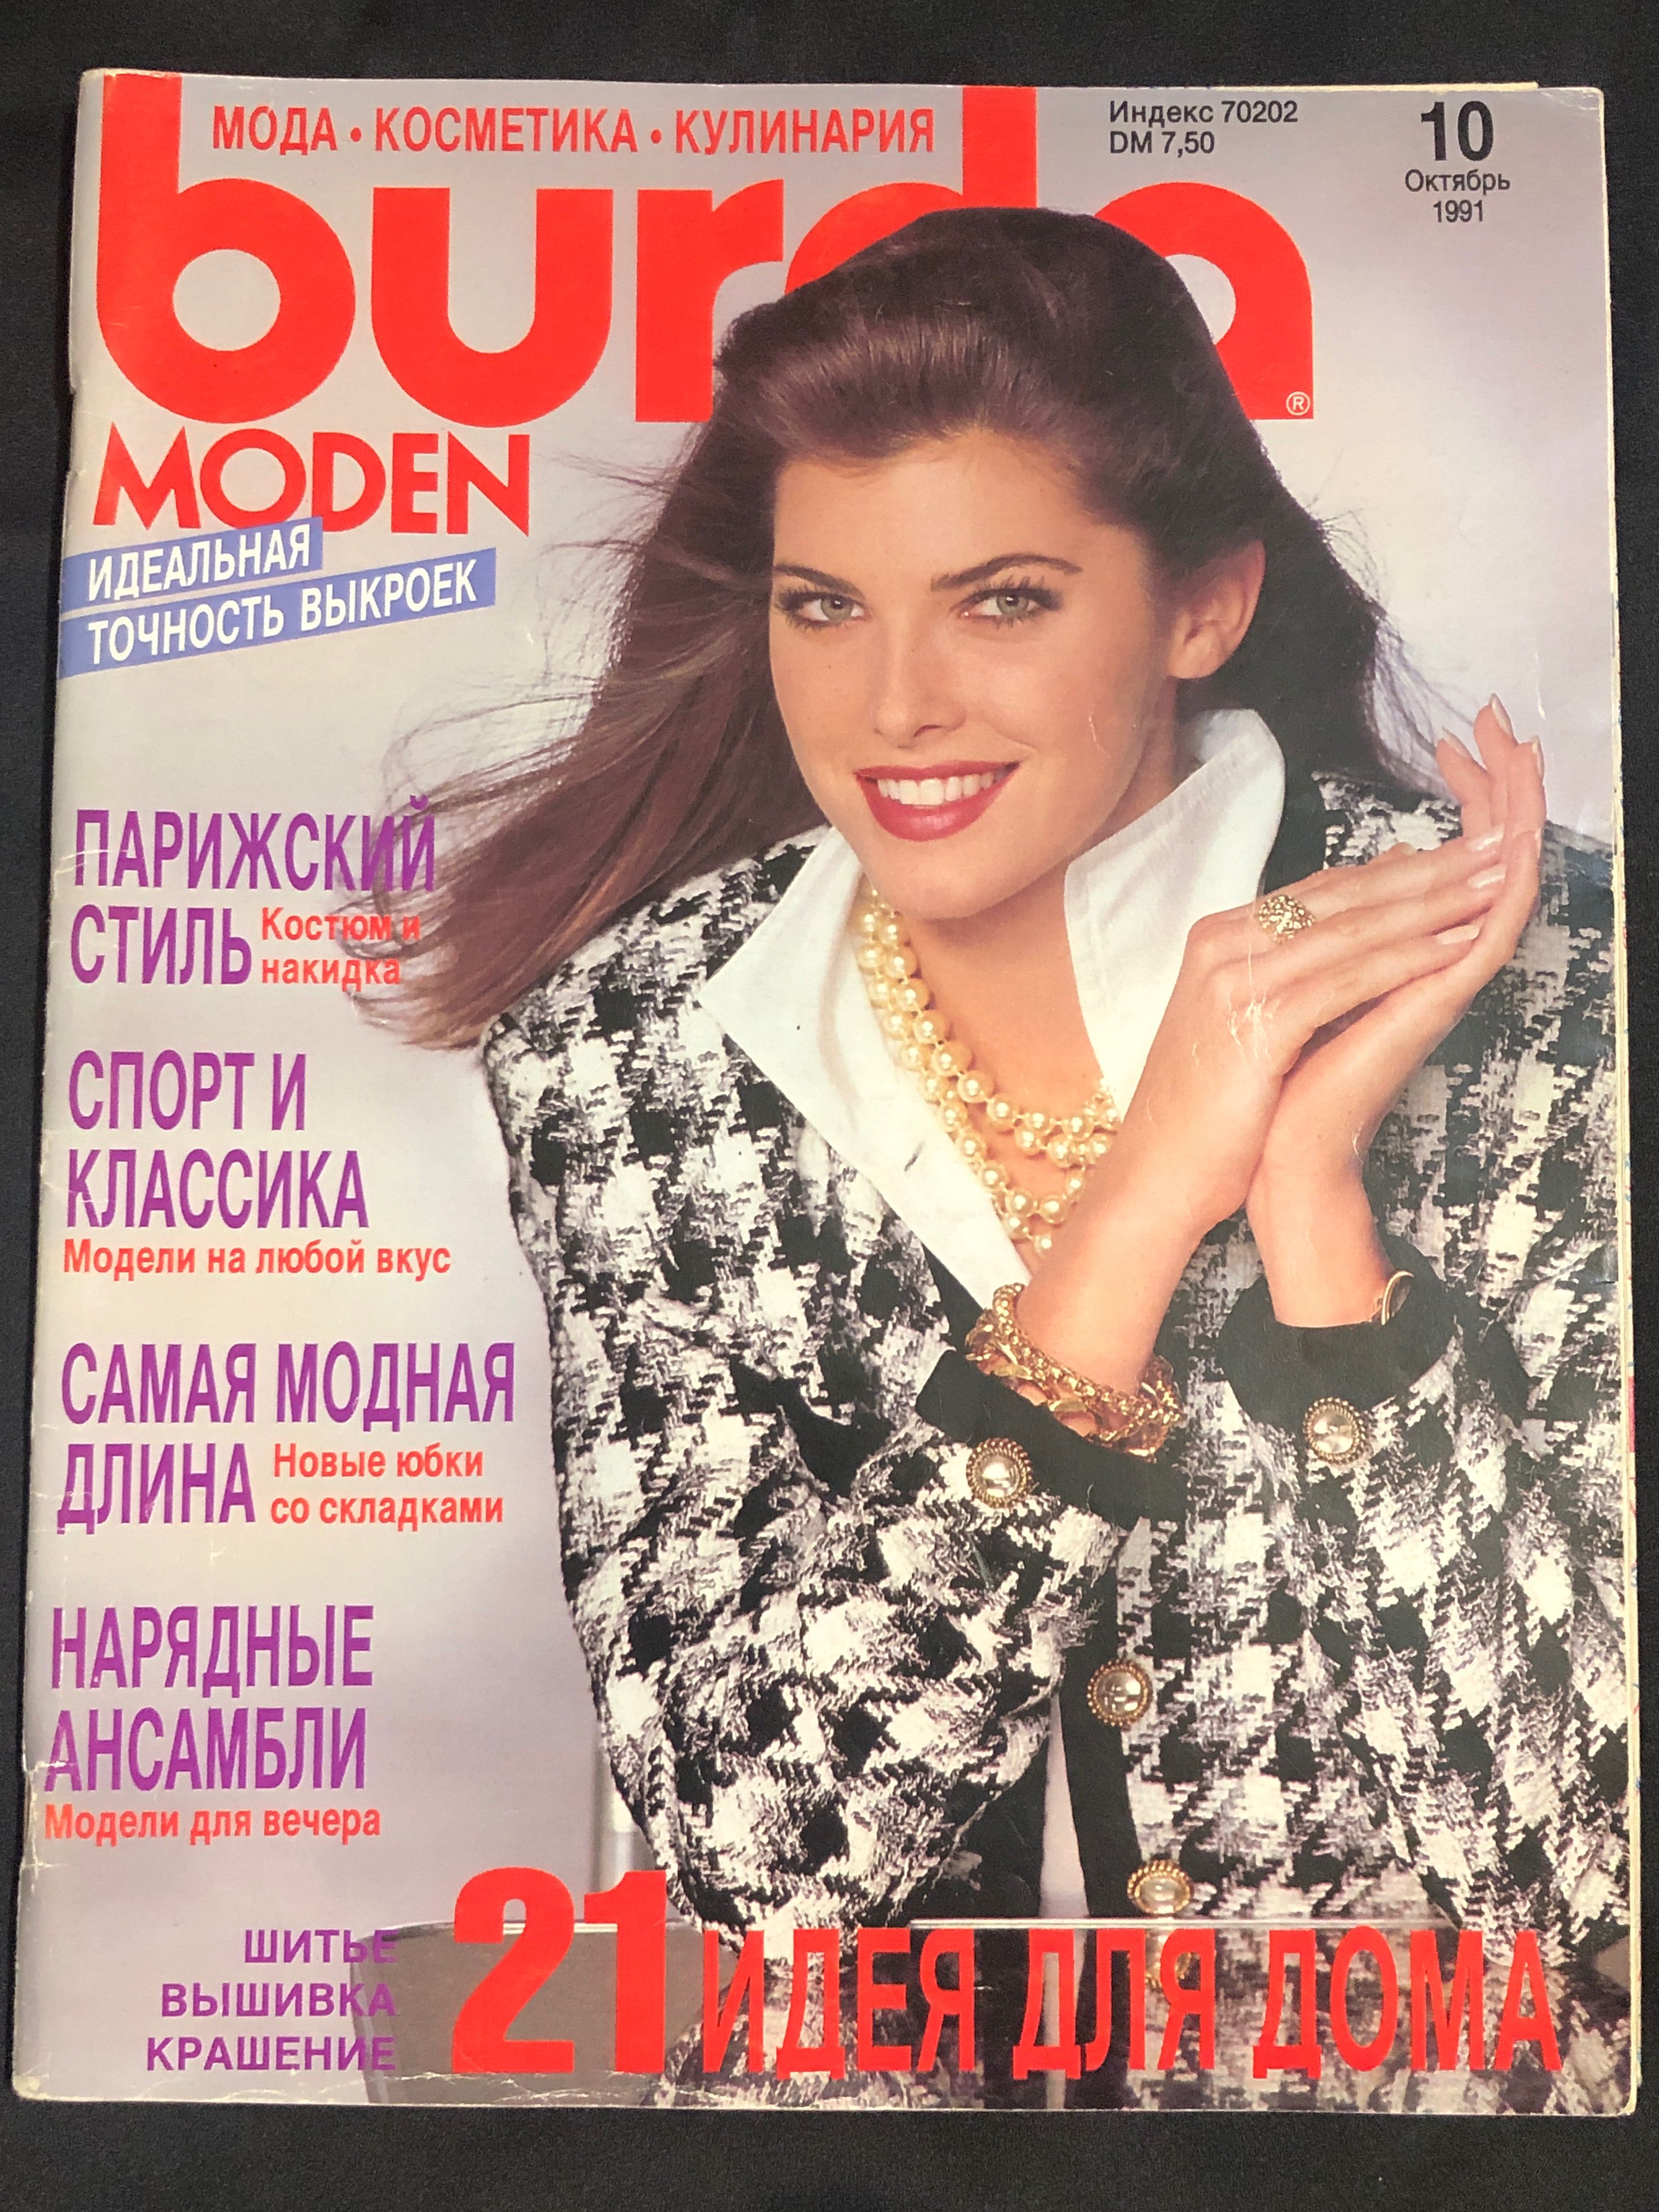 Бурда моден май. Бурда моден 1991 9. Журнал Burda moden 9 1991. Журнал Бурда моден 1990. Burda moden журнал 1991.